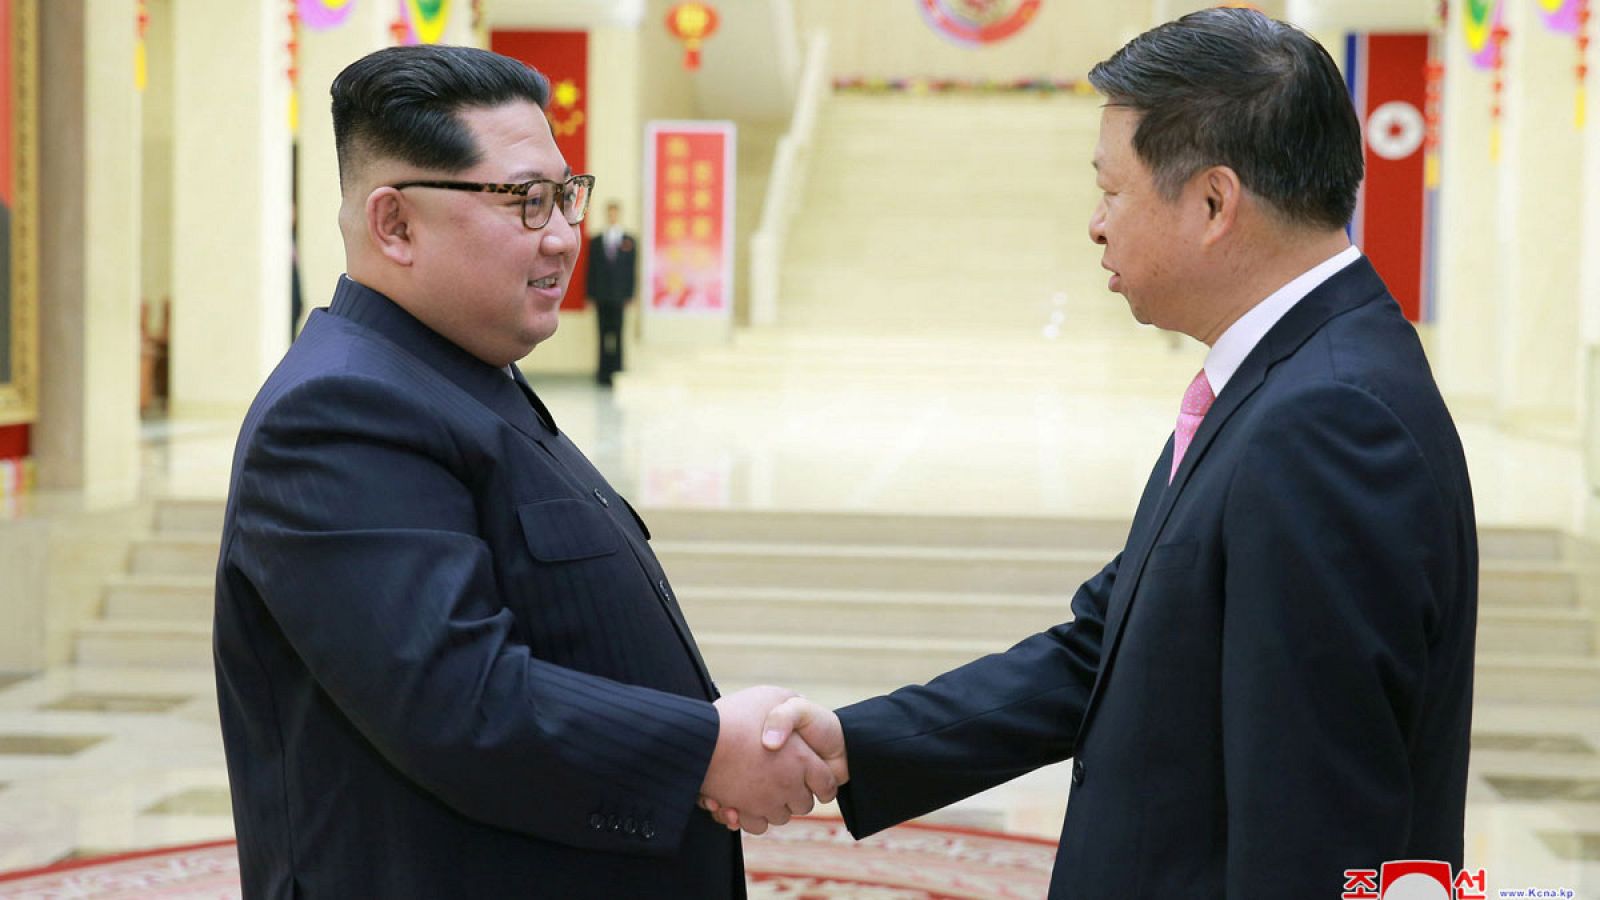 El líder norcoreano, Kim Jong-un (i), saludando al director de relaciones internacionales del Partido Comunista de China, Song Tao.